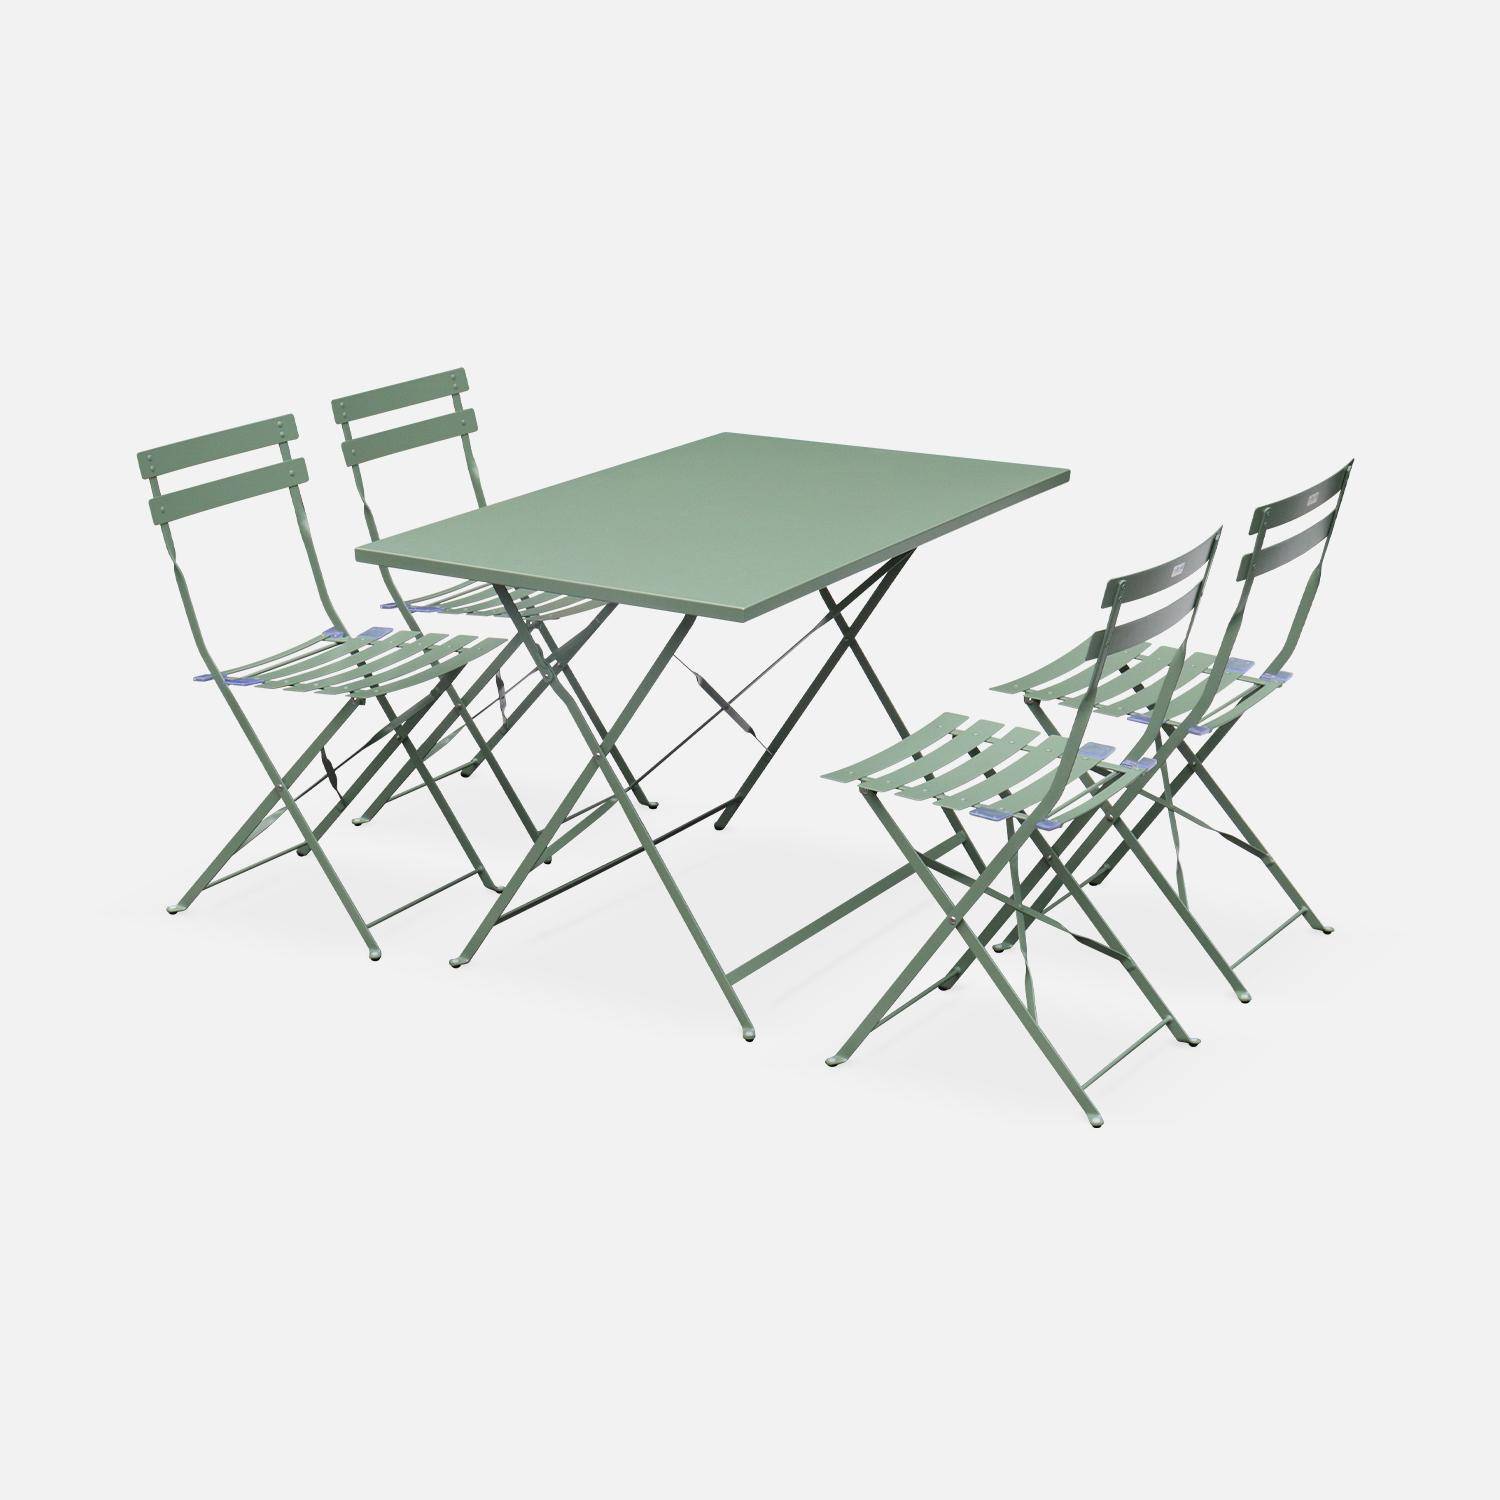 Klappbare Bistro-Gartengarnitur - Rechteckig Emilia graugrün - 110 x 70 cm großer Tisch mit vier Klappstühlen aus pulverbeschichtetem Stahl,sweeek,Photo2